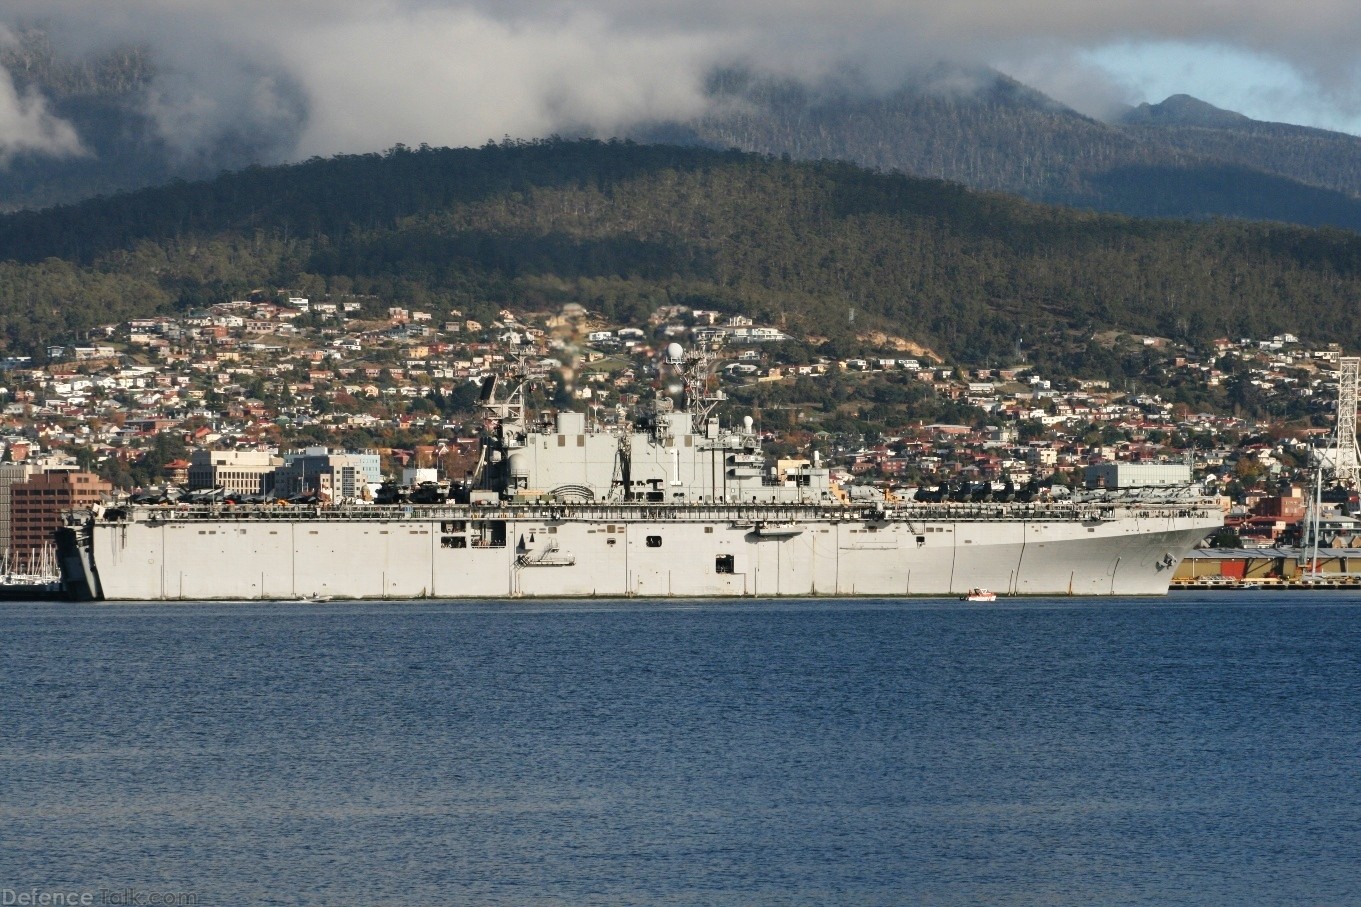 USS Tarawa LHA 1